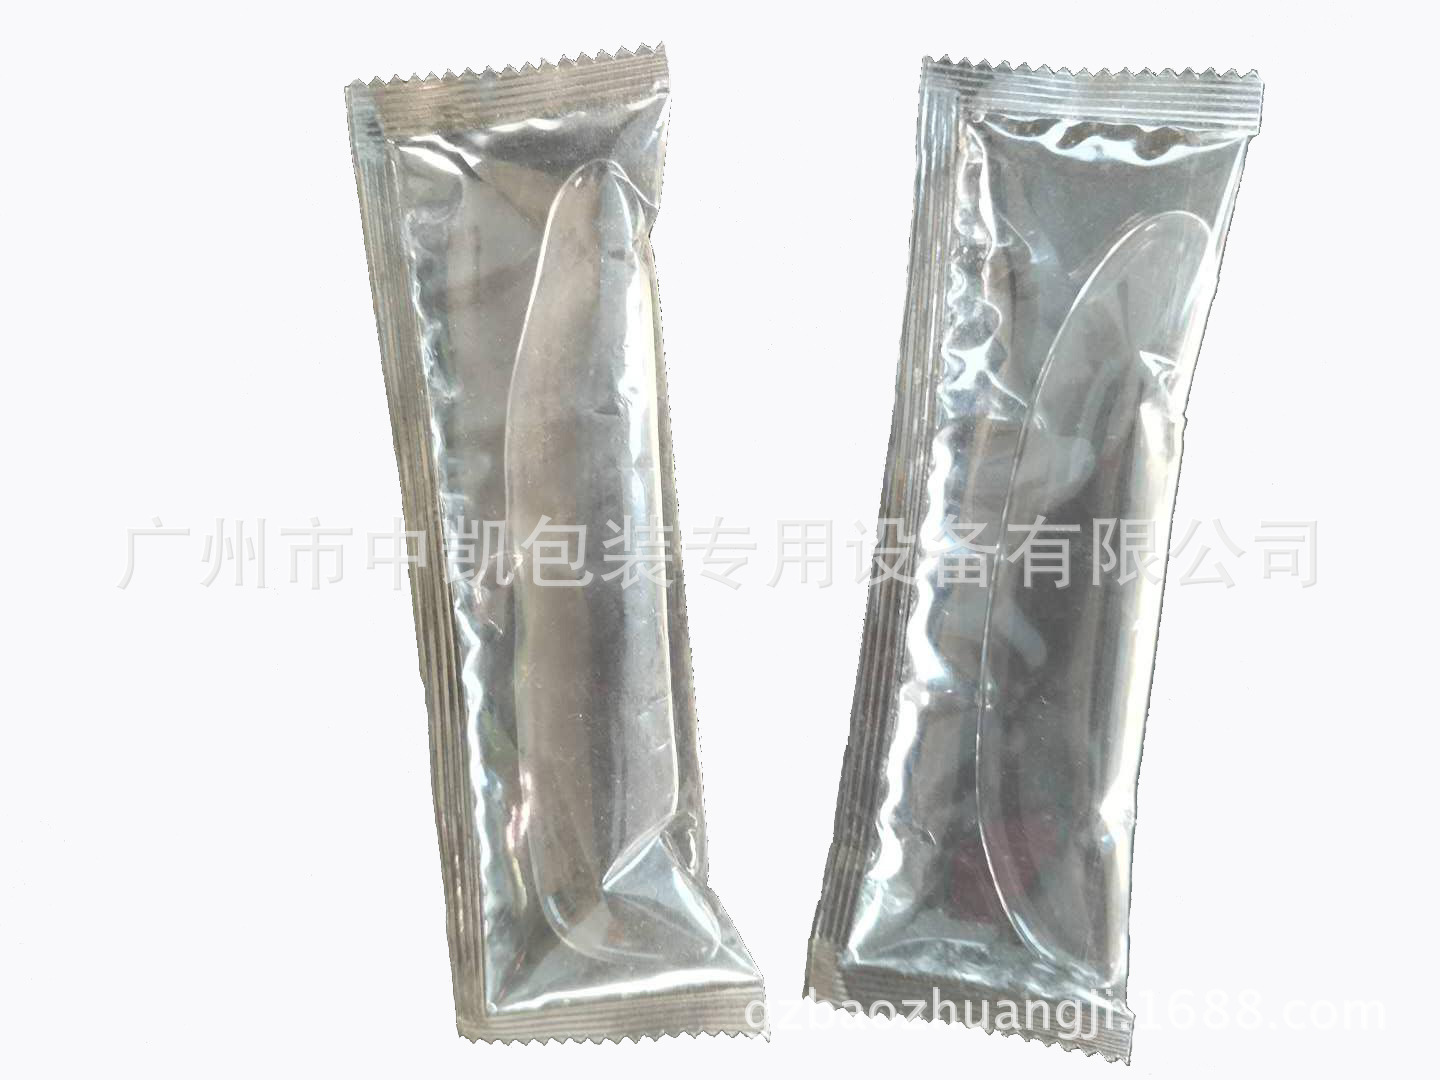 【厂家】促销辣椒酱袋装包装机 火锅料理袋装包装机自动包装机示例图9